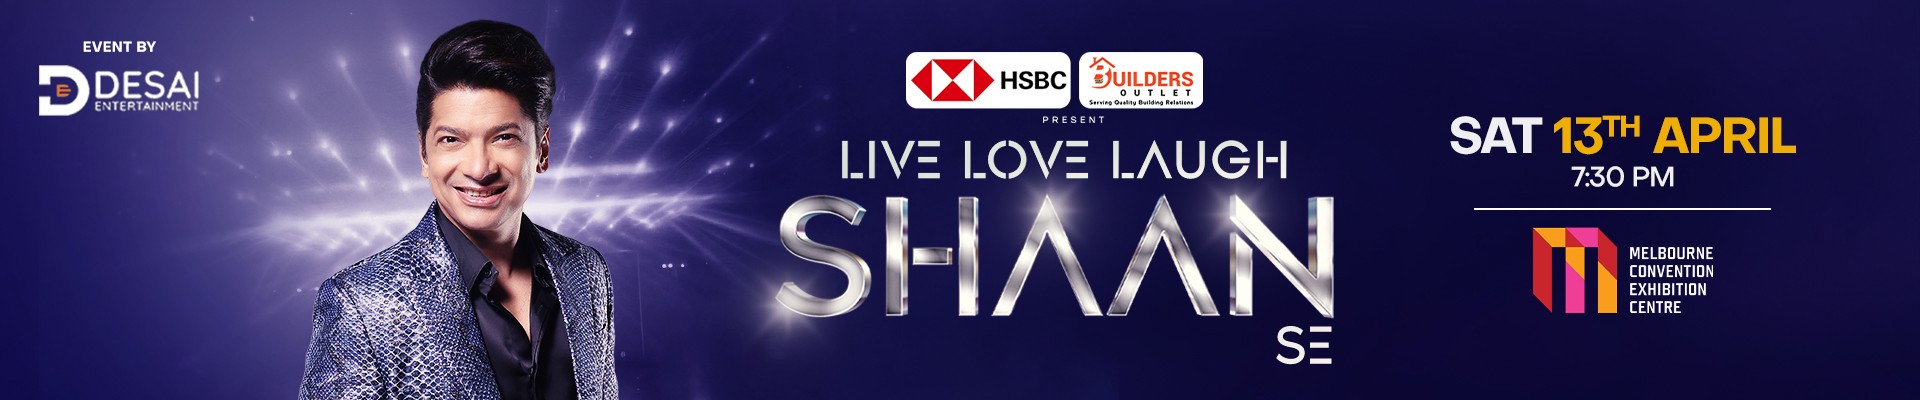 Live Love Laugh - SHAAN Se - Melbourne Concert